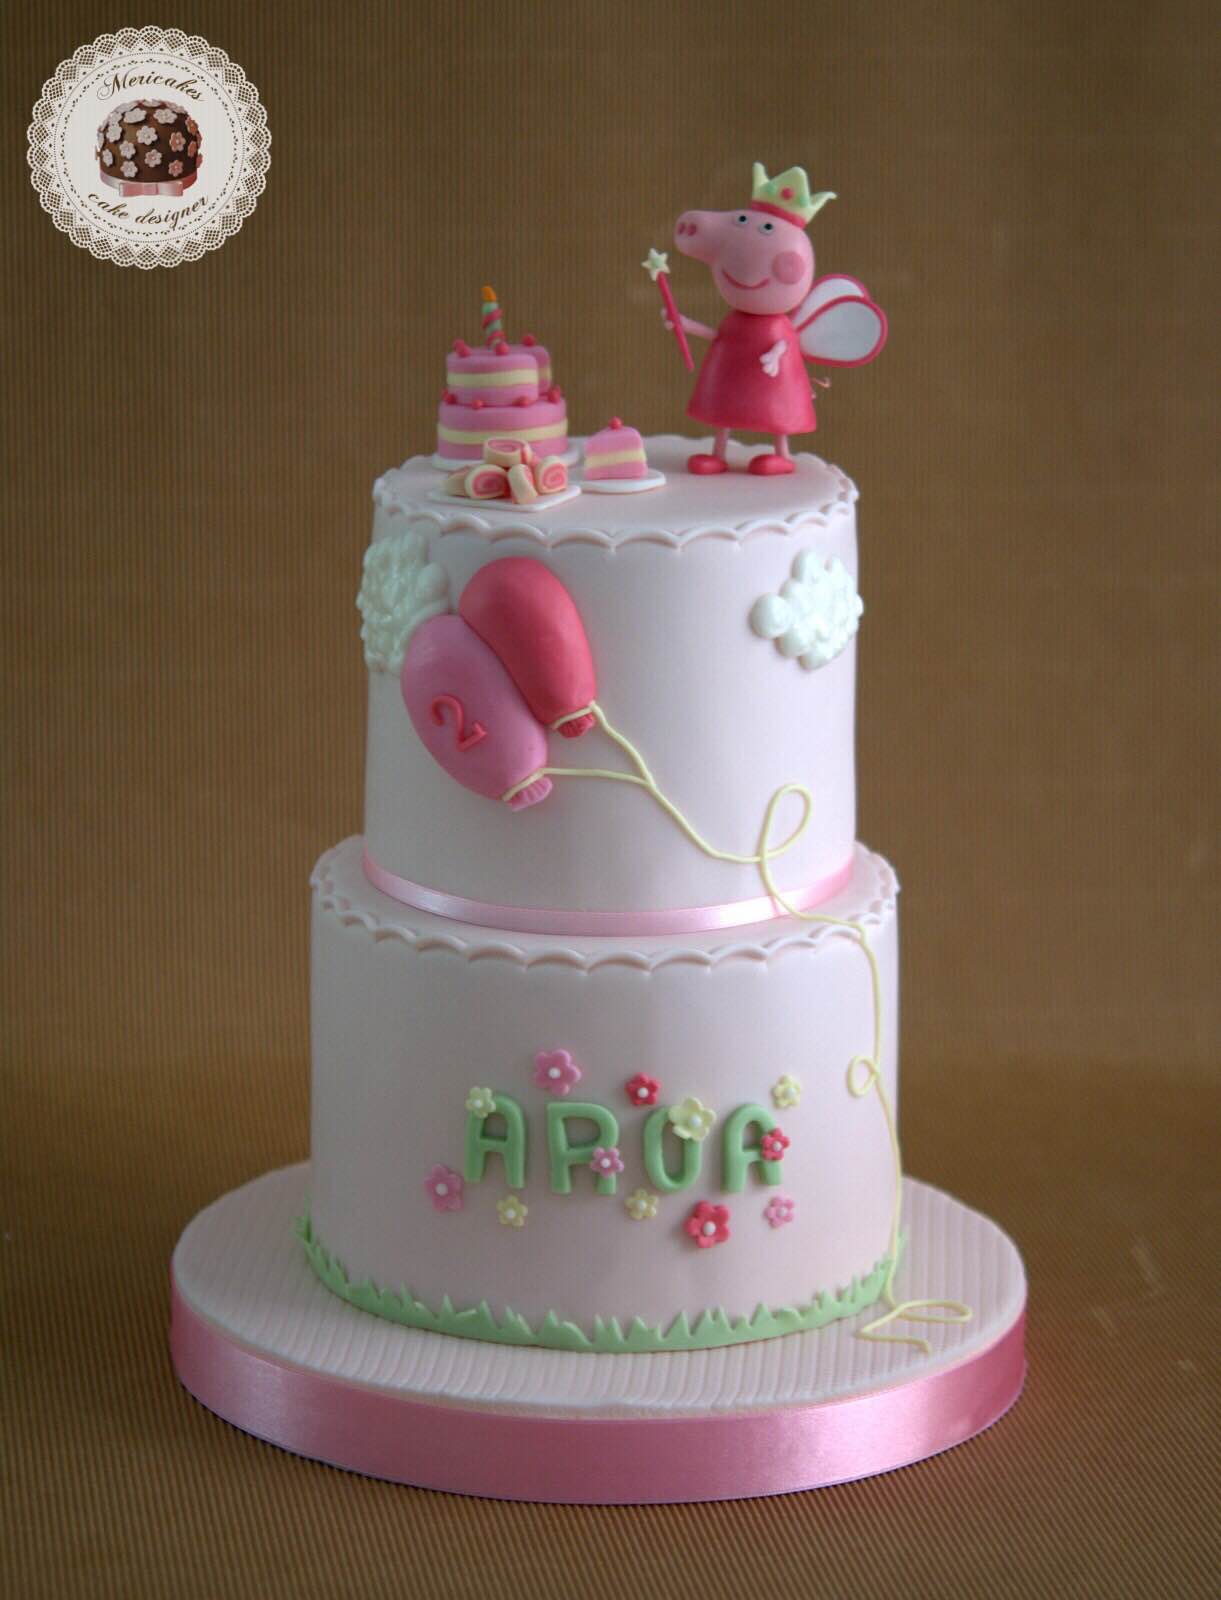 pepa-pig-tarta-cake-birthday-cake-tarta-decorada-tartas-barcelona-mericakes-girl-cake-fairy-pepa-pastel-fondant-satin-ice